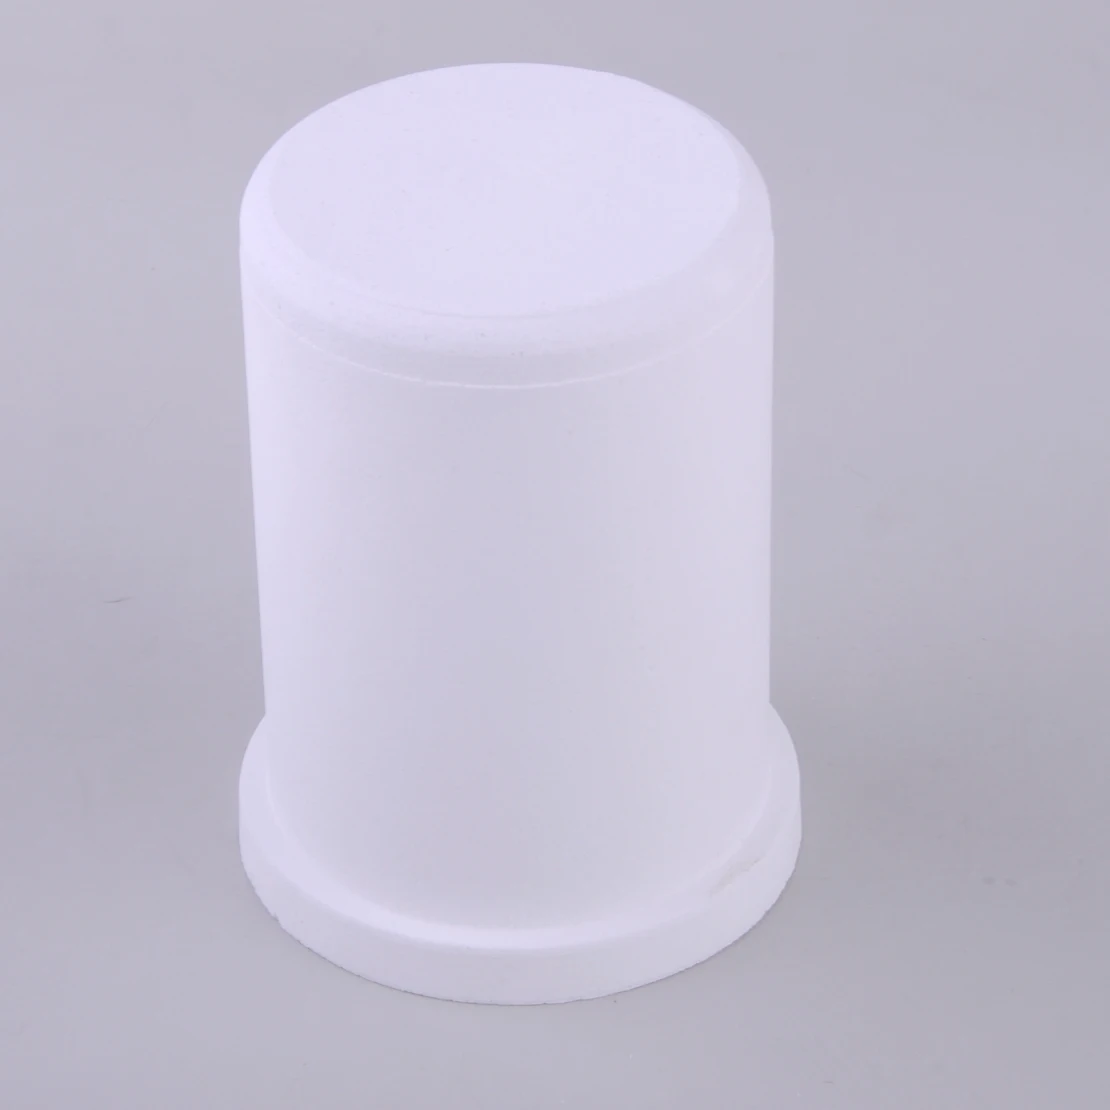 LETAOSK белый Кварцевый тигель чашка пресс-форма для литья прессформы для плавления металла цвета: золотистый, серебристый лом 1кг 2кг 3кг кг